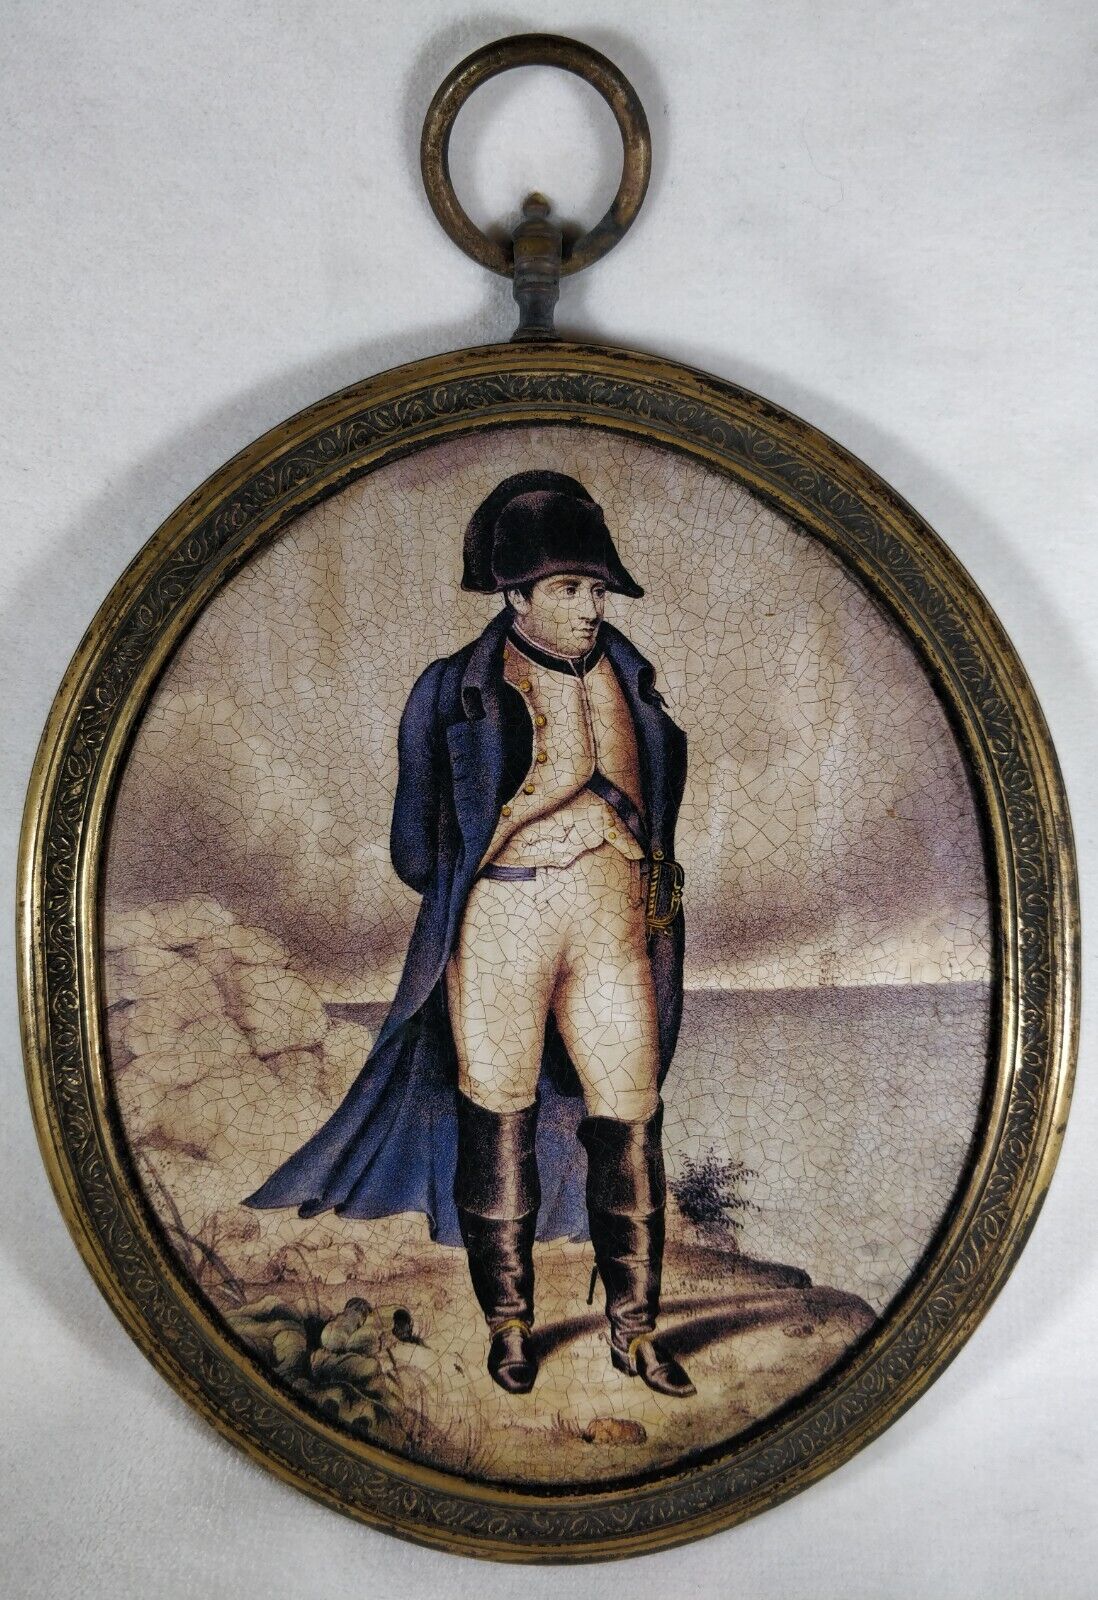 Napoleon Bonaparte portrait in a bronze frame.